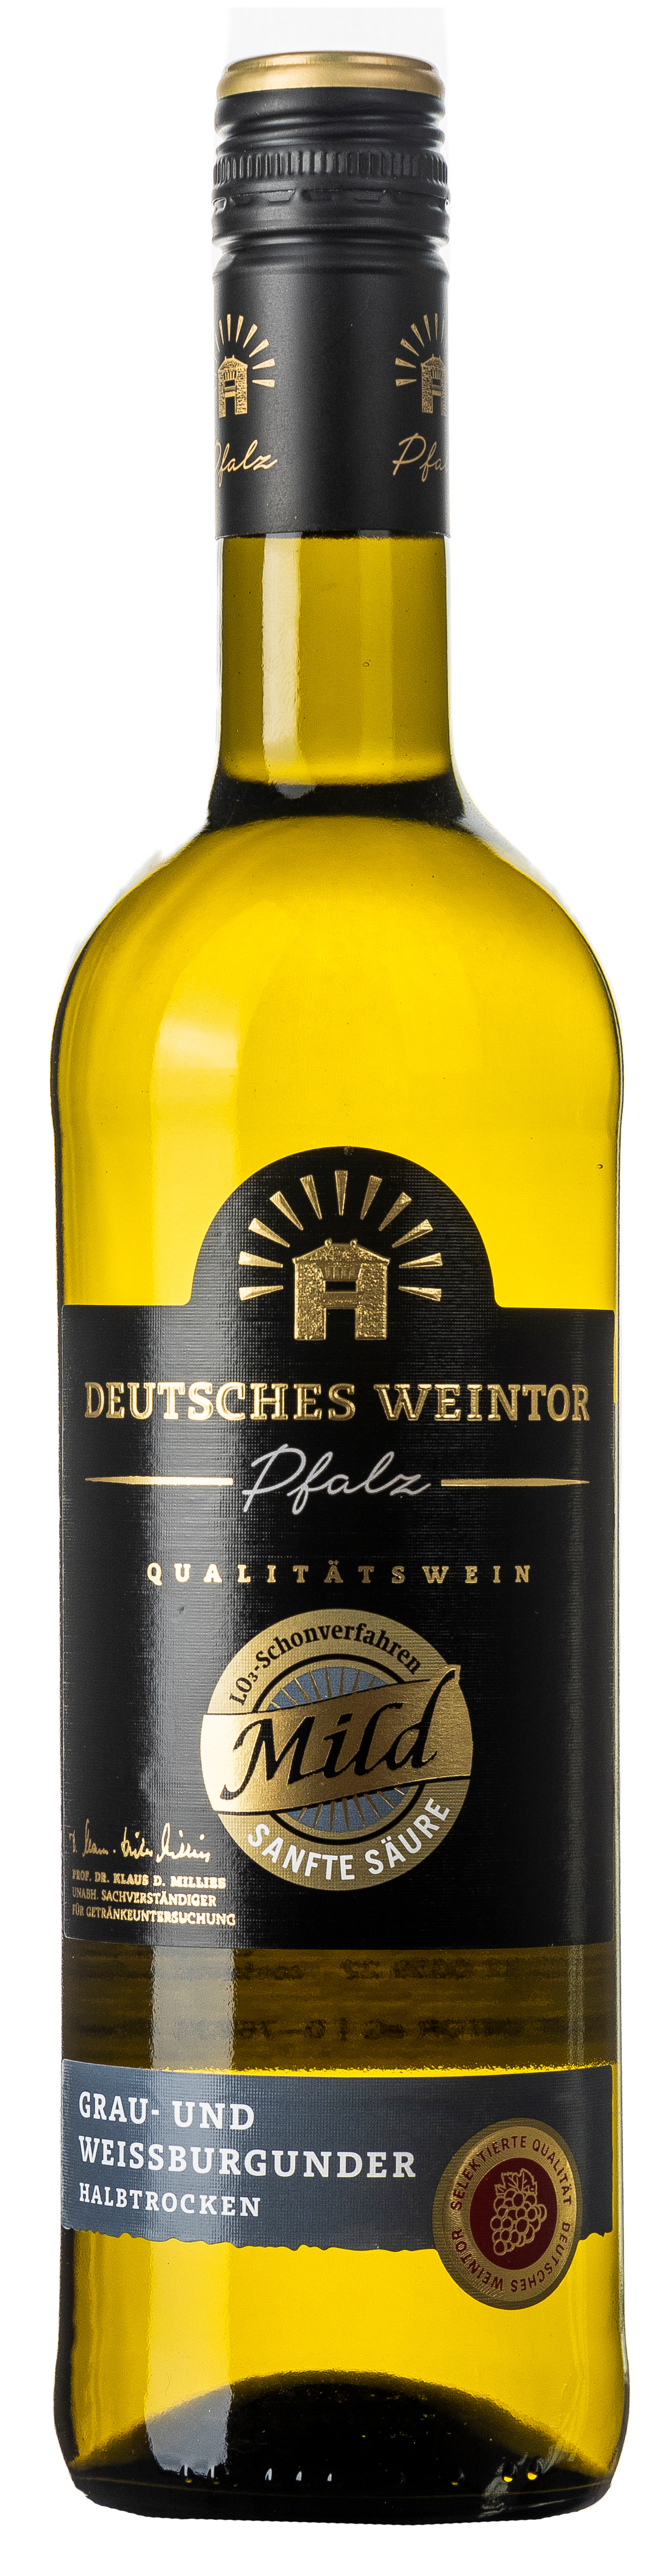 Deutsches Weintor Grau- & Weißburgunder Mild halbtrocken 12,5% vol. 0,75L